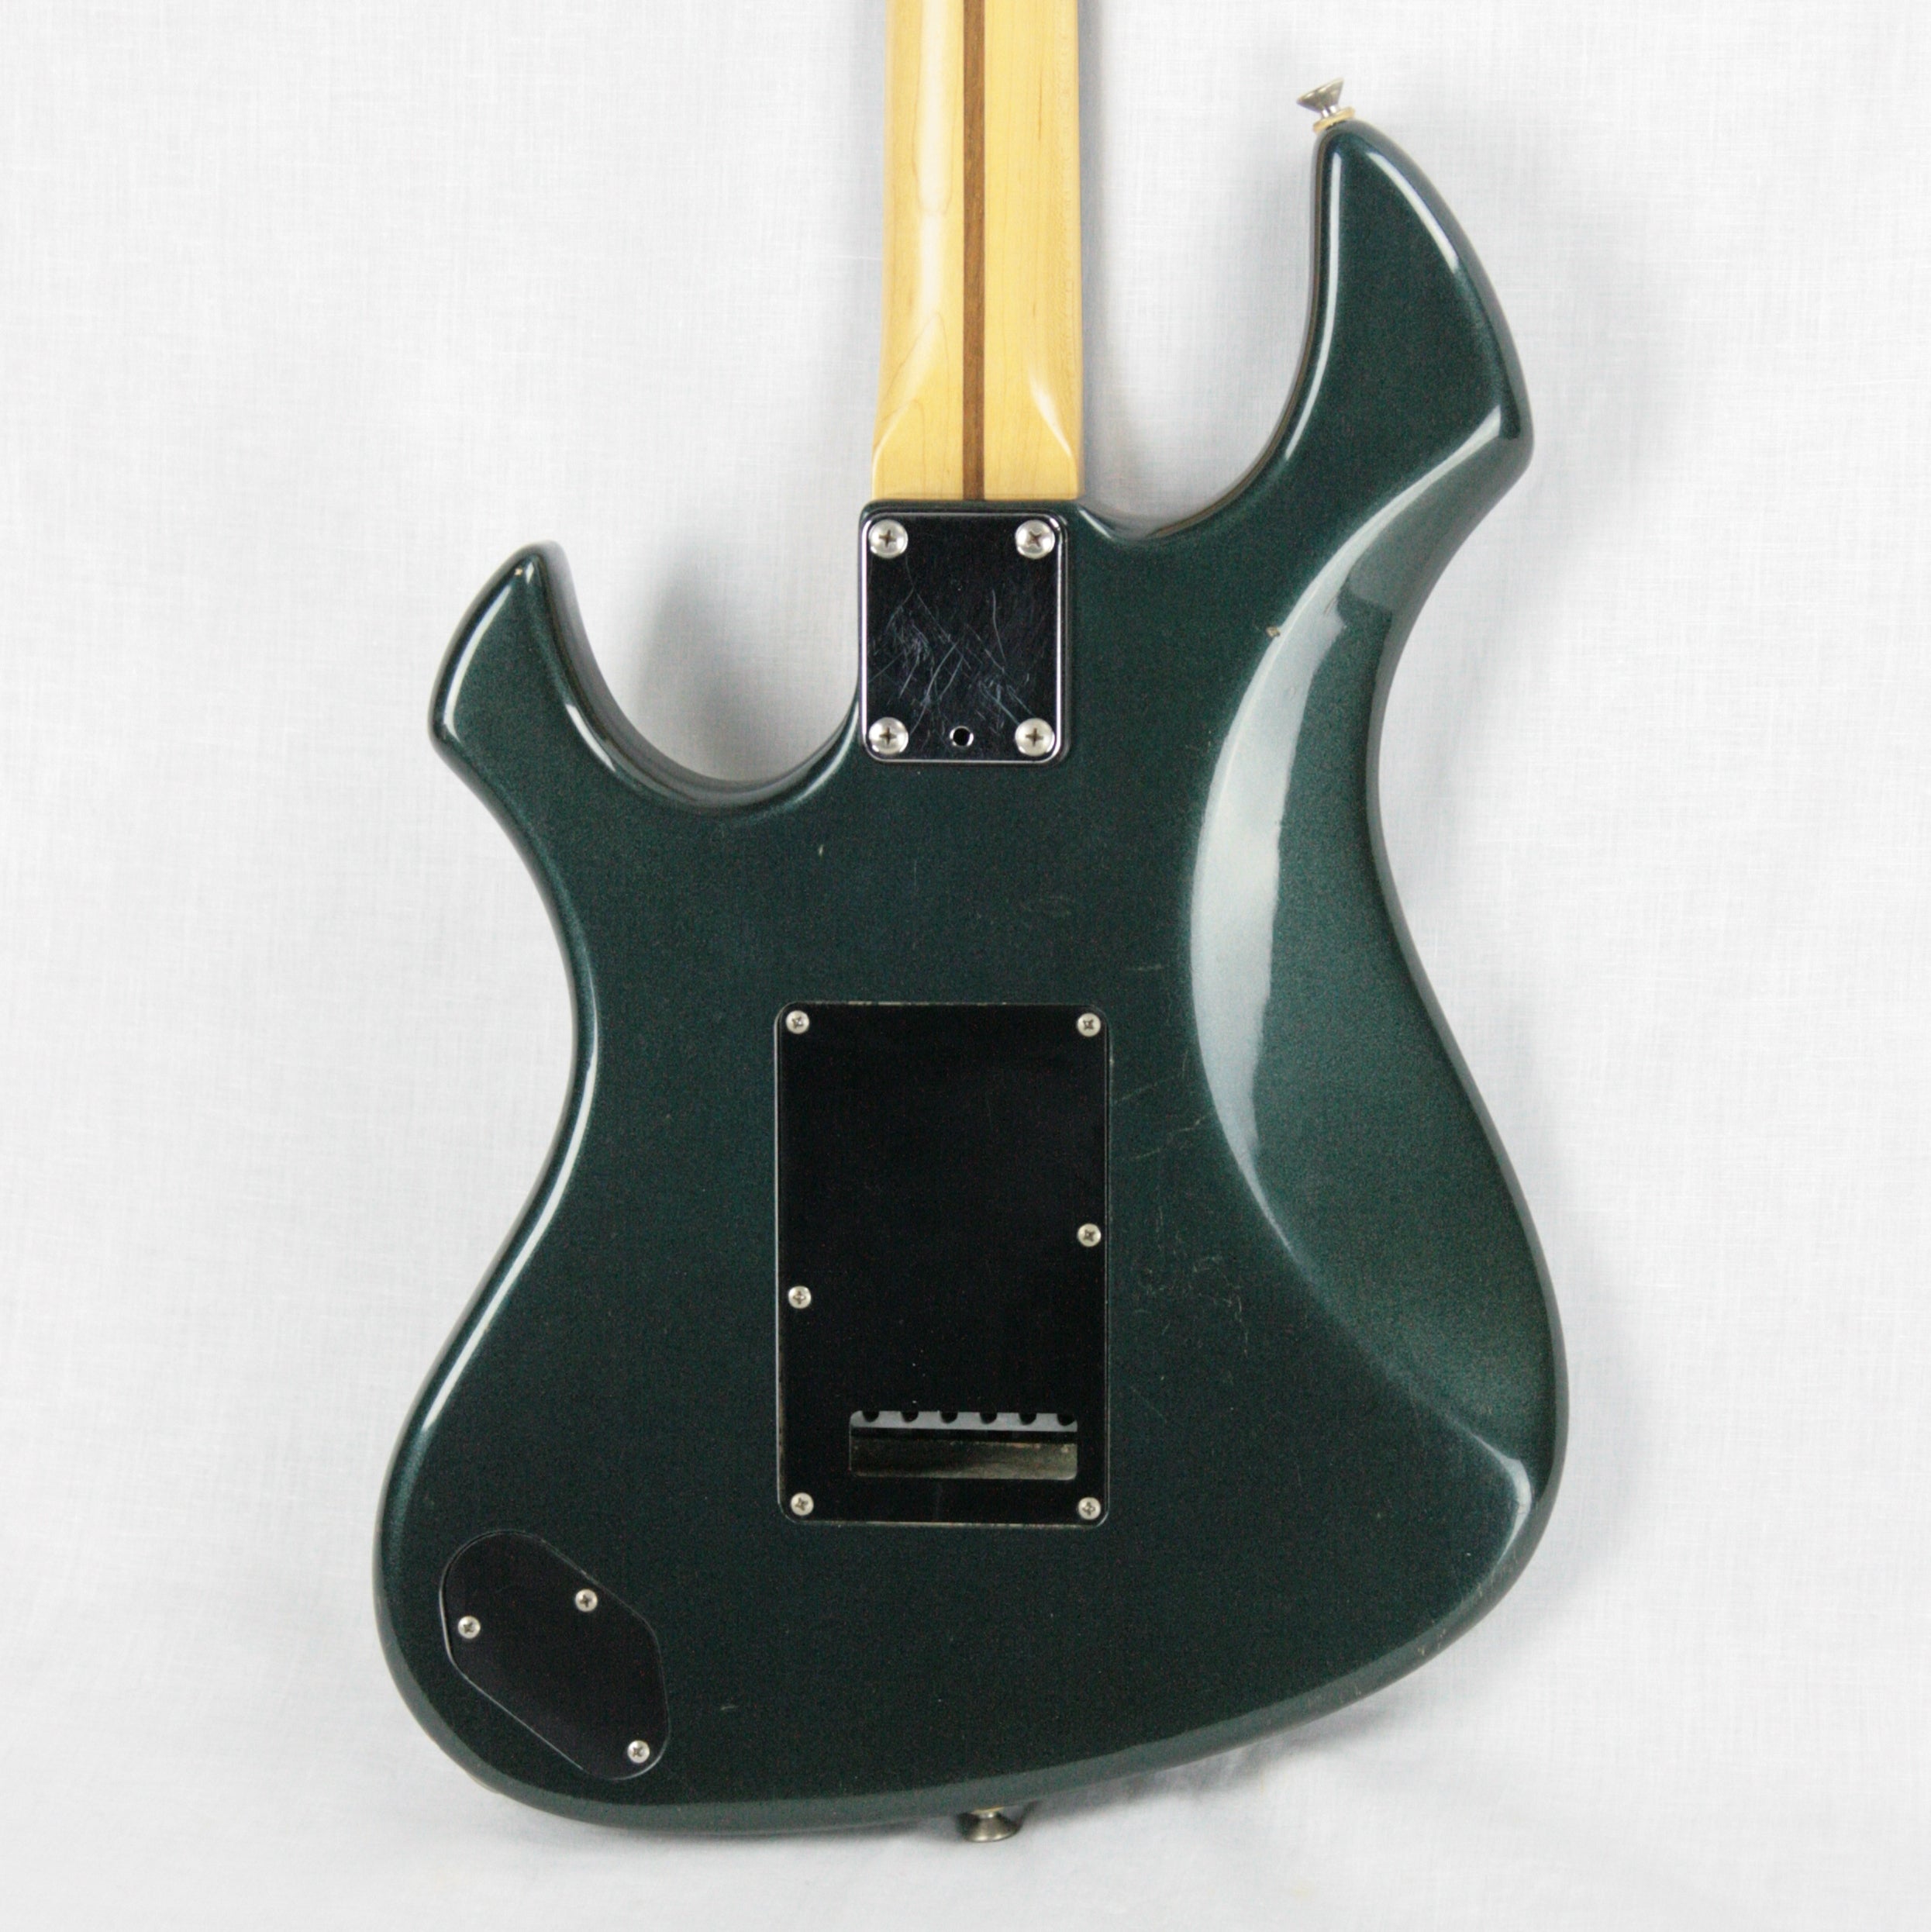 *SOLD*  c 1985 Fender Performer Gun Metal Blue Electric Guitar! 1980's Japan MIJ